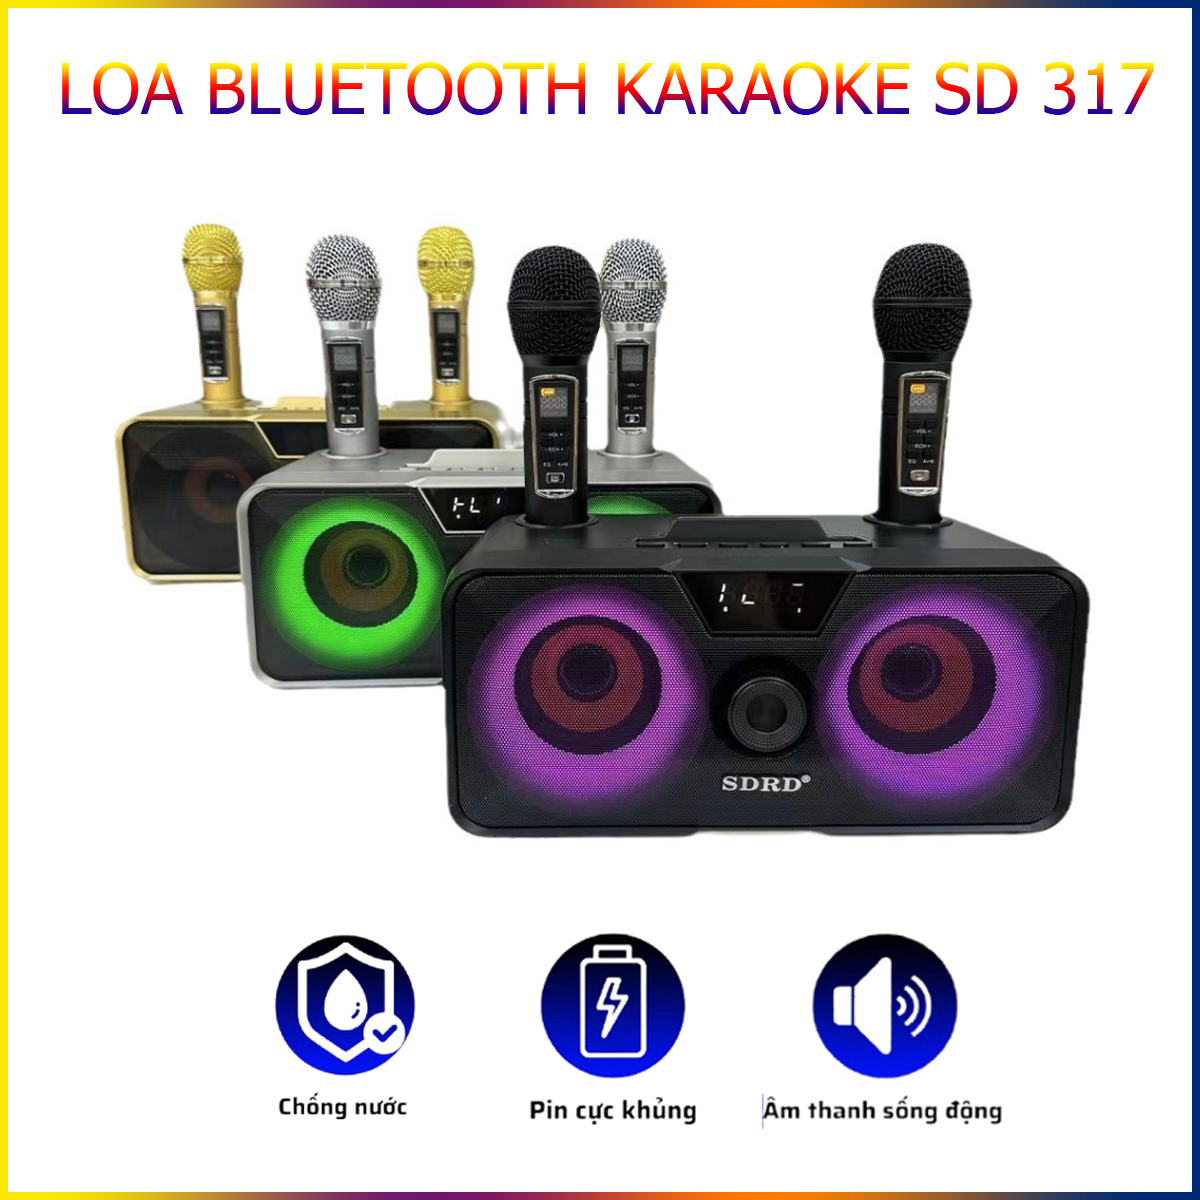 Loa Karaoke Bluetooth SDRD SD-317 Đầy Mạnh Mẽ, Âm Thanh Chất Lượng, Đèn Led Nhiều Màu Sắc Tặng Kèm 2 Micro